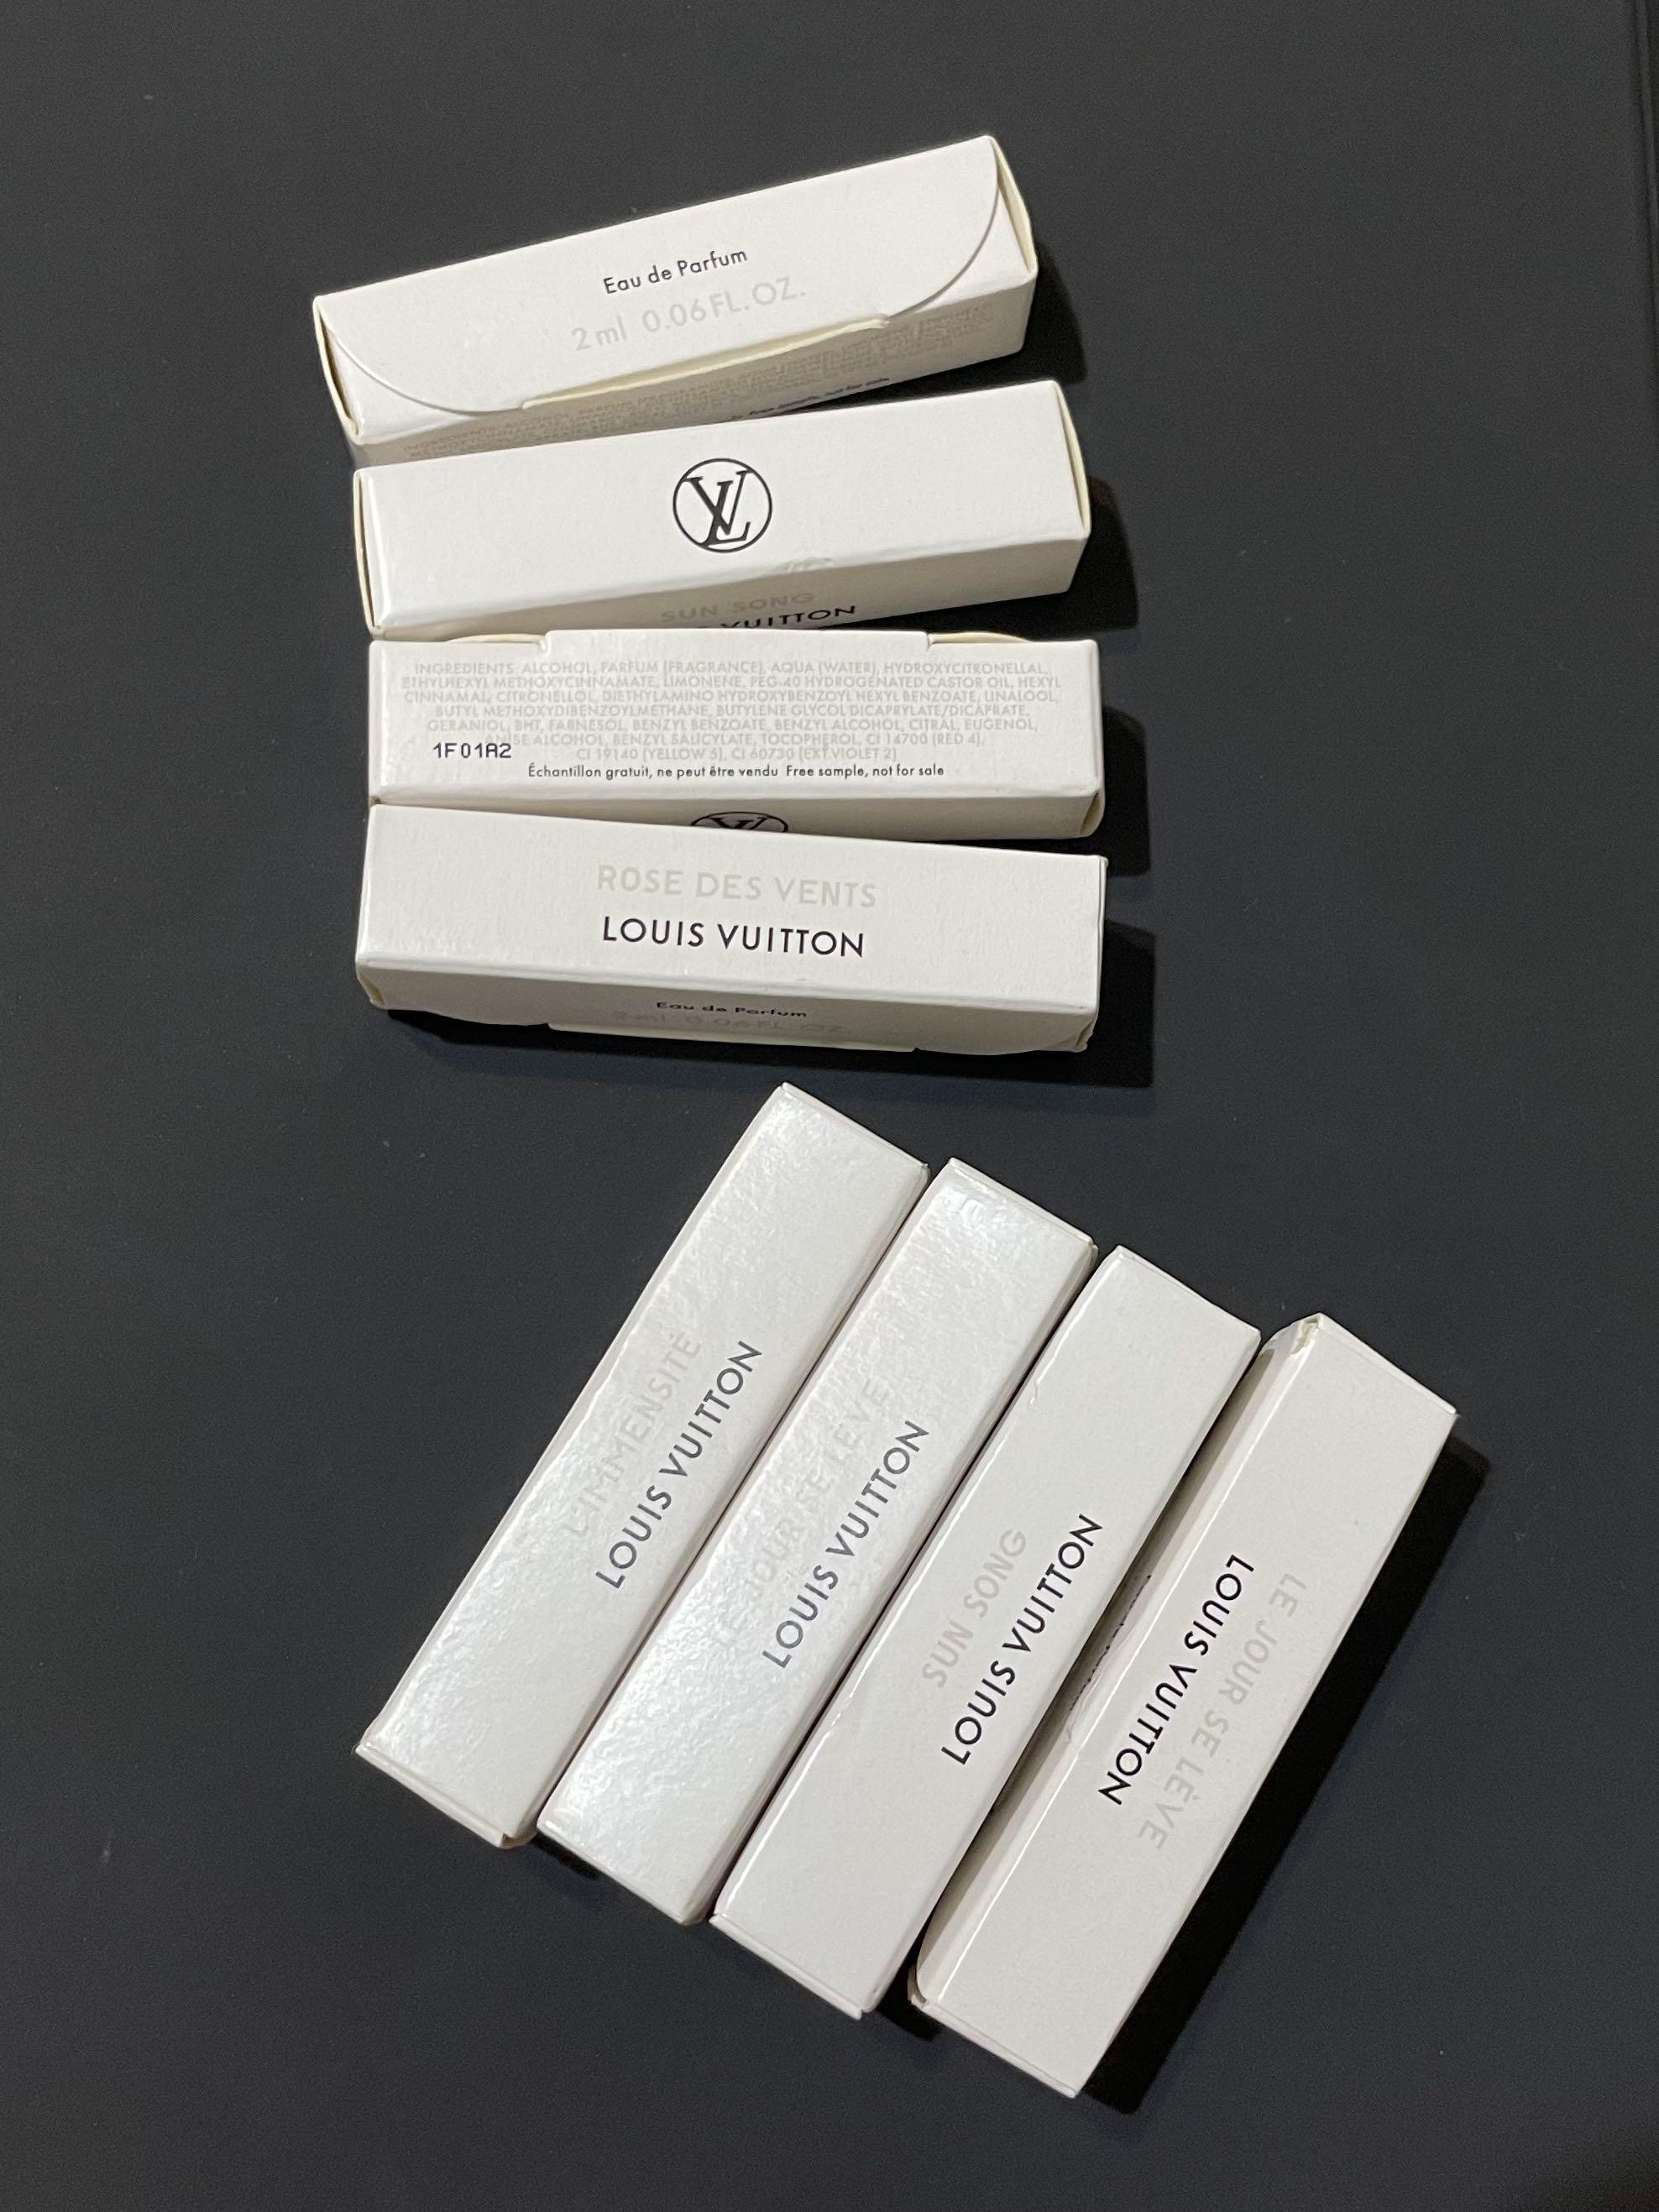 3 Louis Vuitton Perfume Samples: Symphony, Coeur Battant, and Le Jour Se  Leve